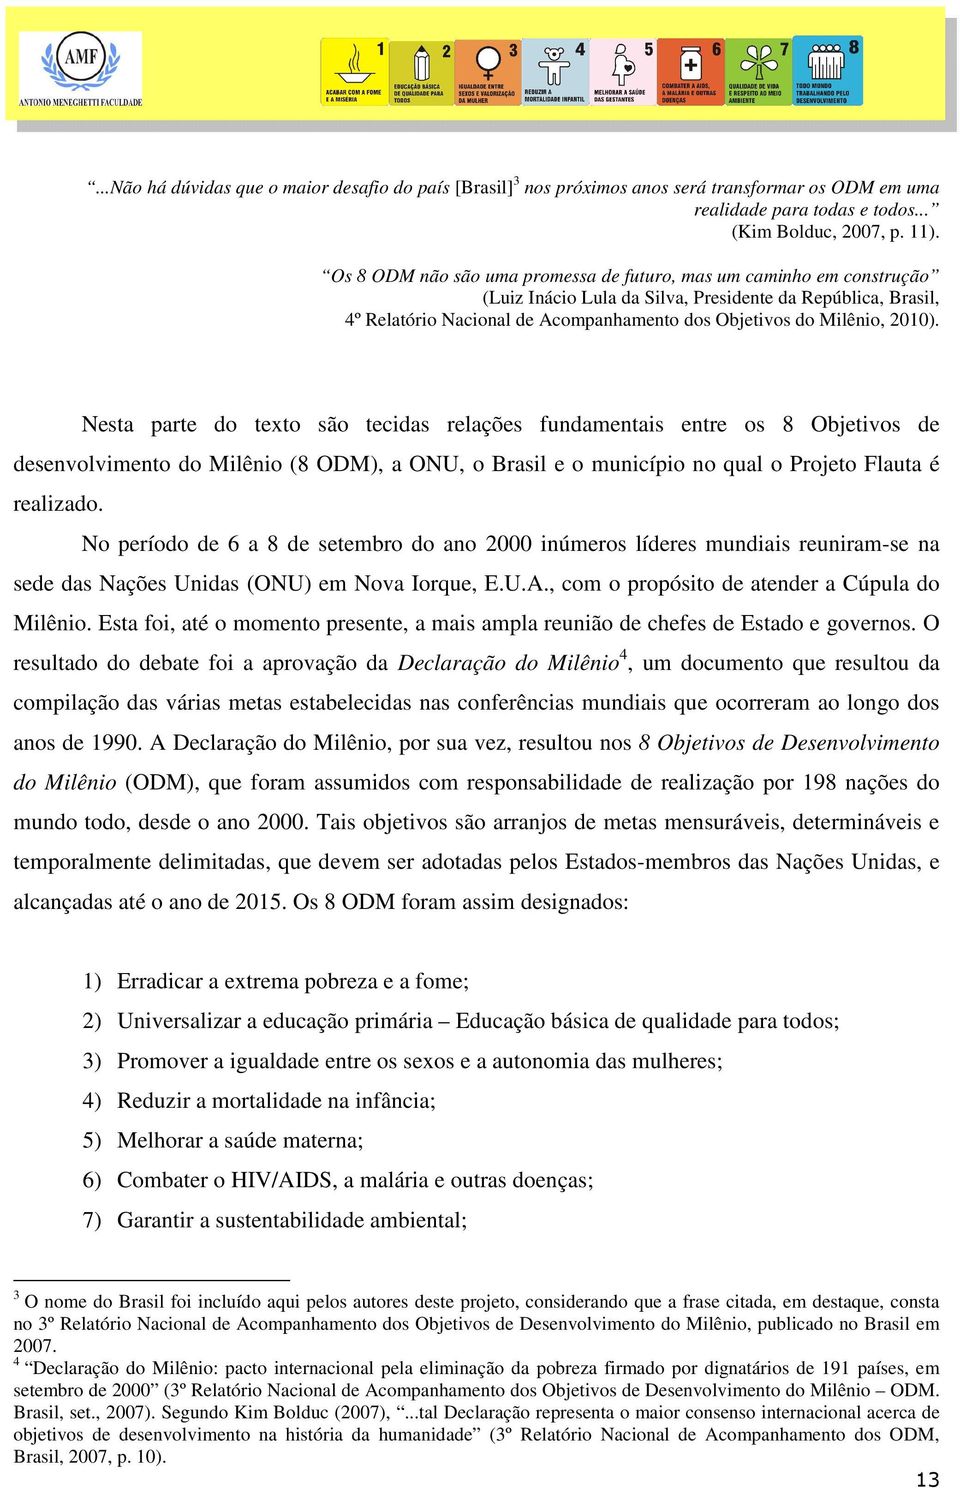 2010). Nesta parte do texto são tecidas relações fundamentais entre os 8 Objetivos de desenvolvimento do Milênio (8 ODM), a ONU, o Brasil e o município no qual o Projeto Flauta é realizado.